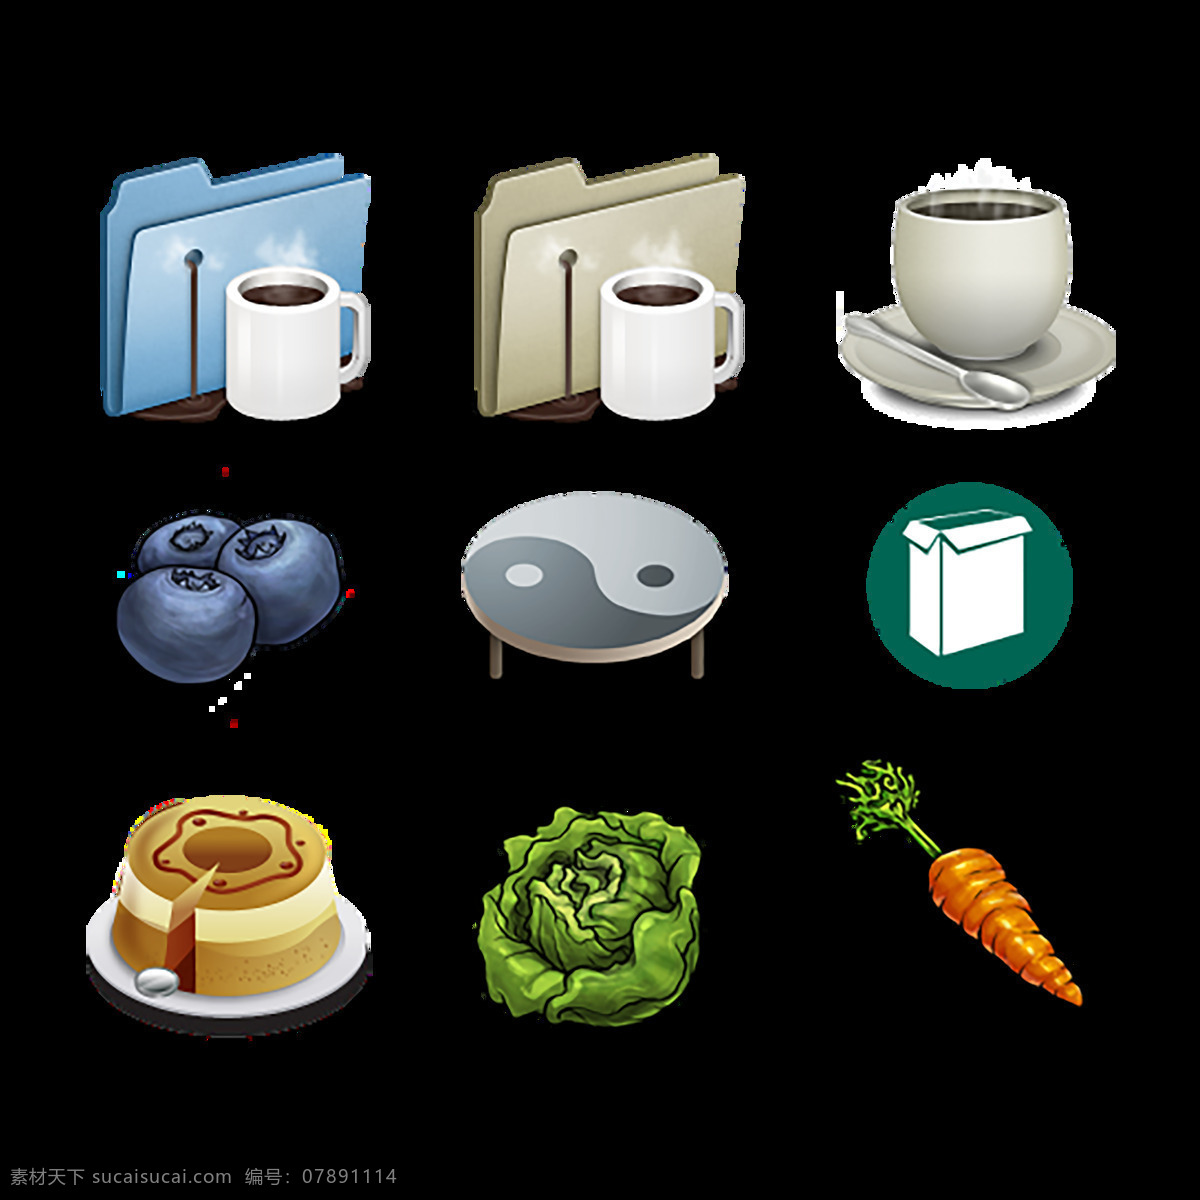 蛋糕 热饮 食物 食品 图标 icon 按钮 白色 胡萝卜 菜花 商务图标 简约图标 网页元素图标